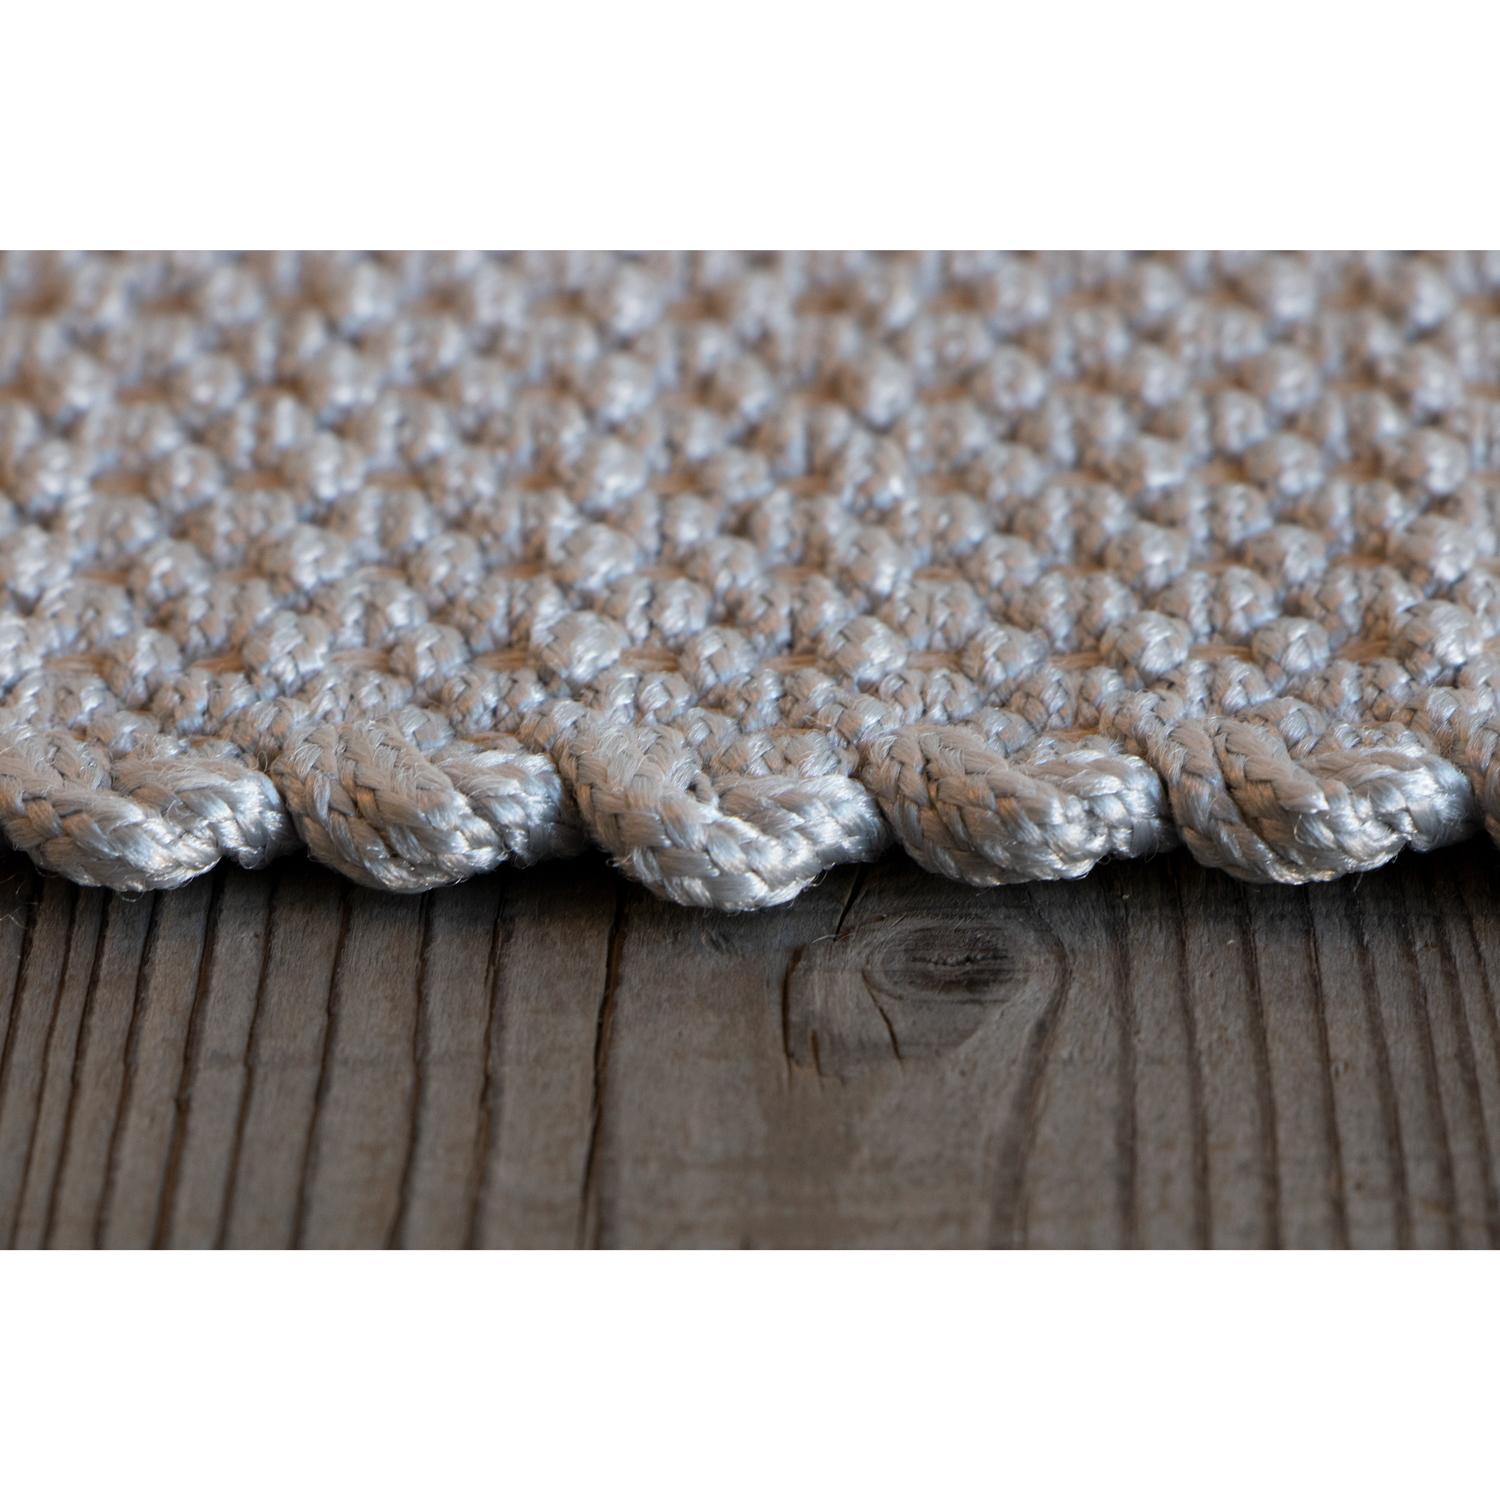 Hand-Woven Tappeto Design italiano alto artigianato bianco by Deanna Comelllini 200x300cm For Sale